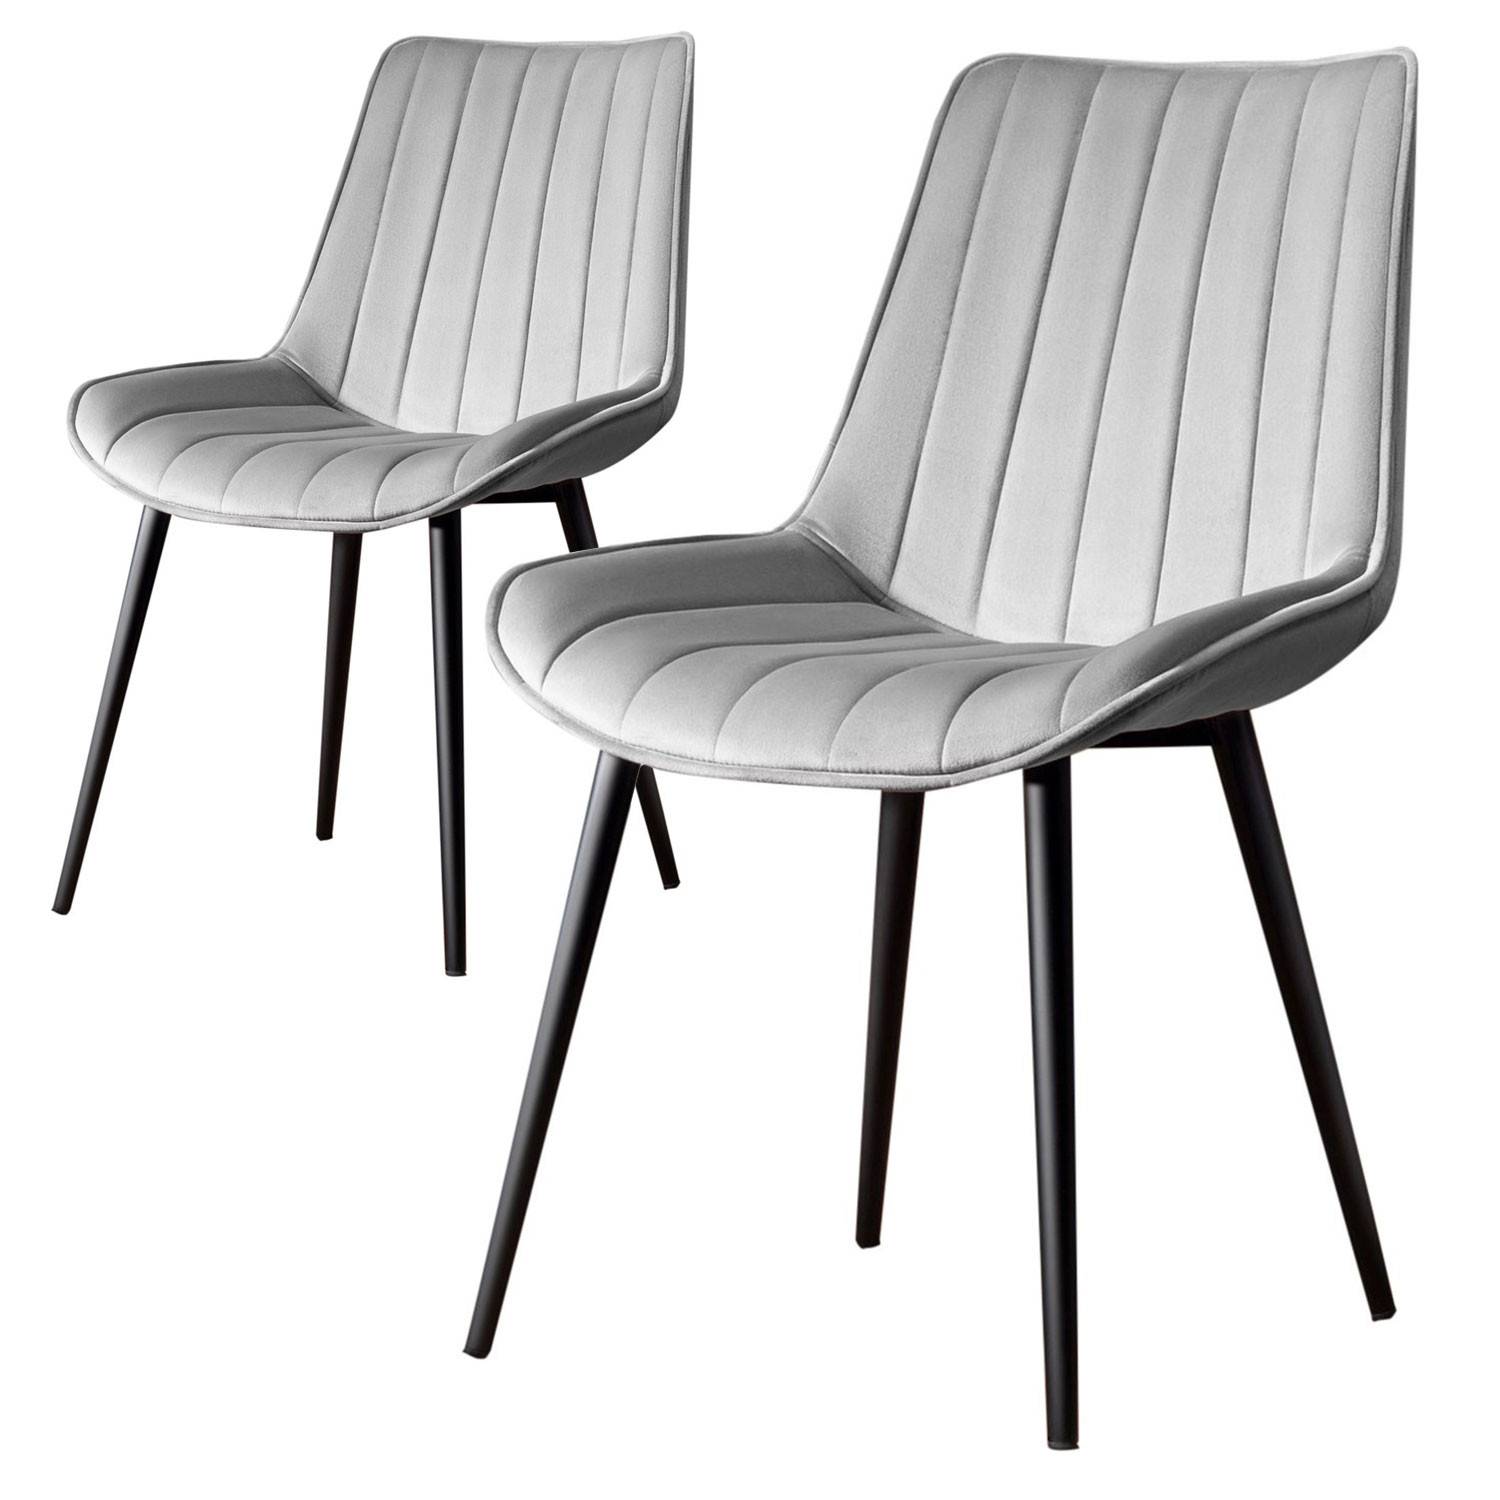 Lote de 2 sillas Kinasi de terciopelo gris y metal negro